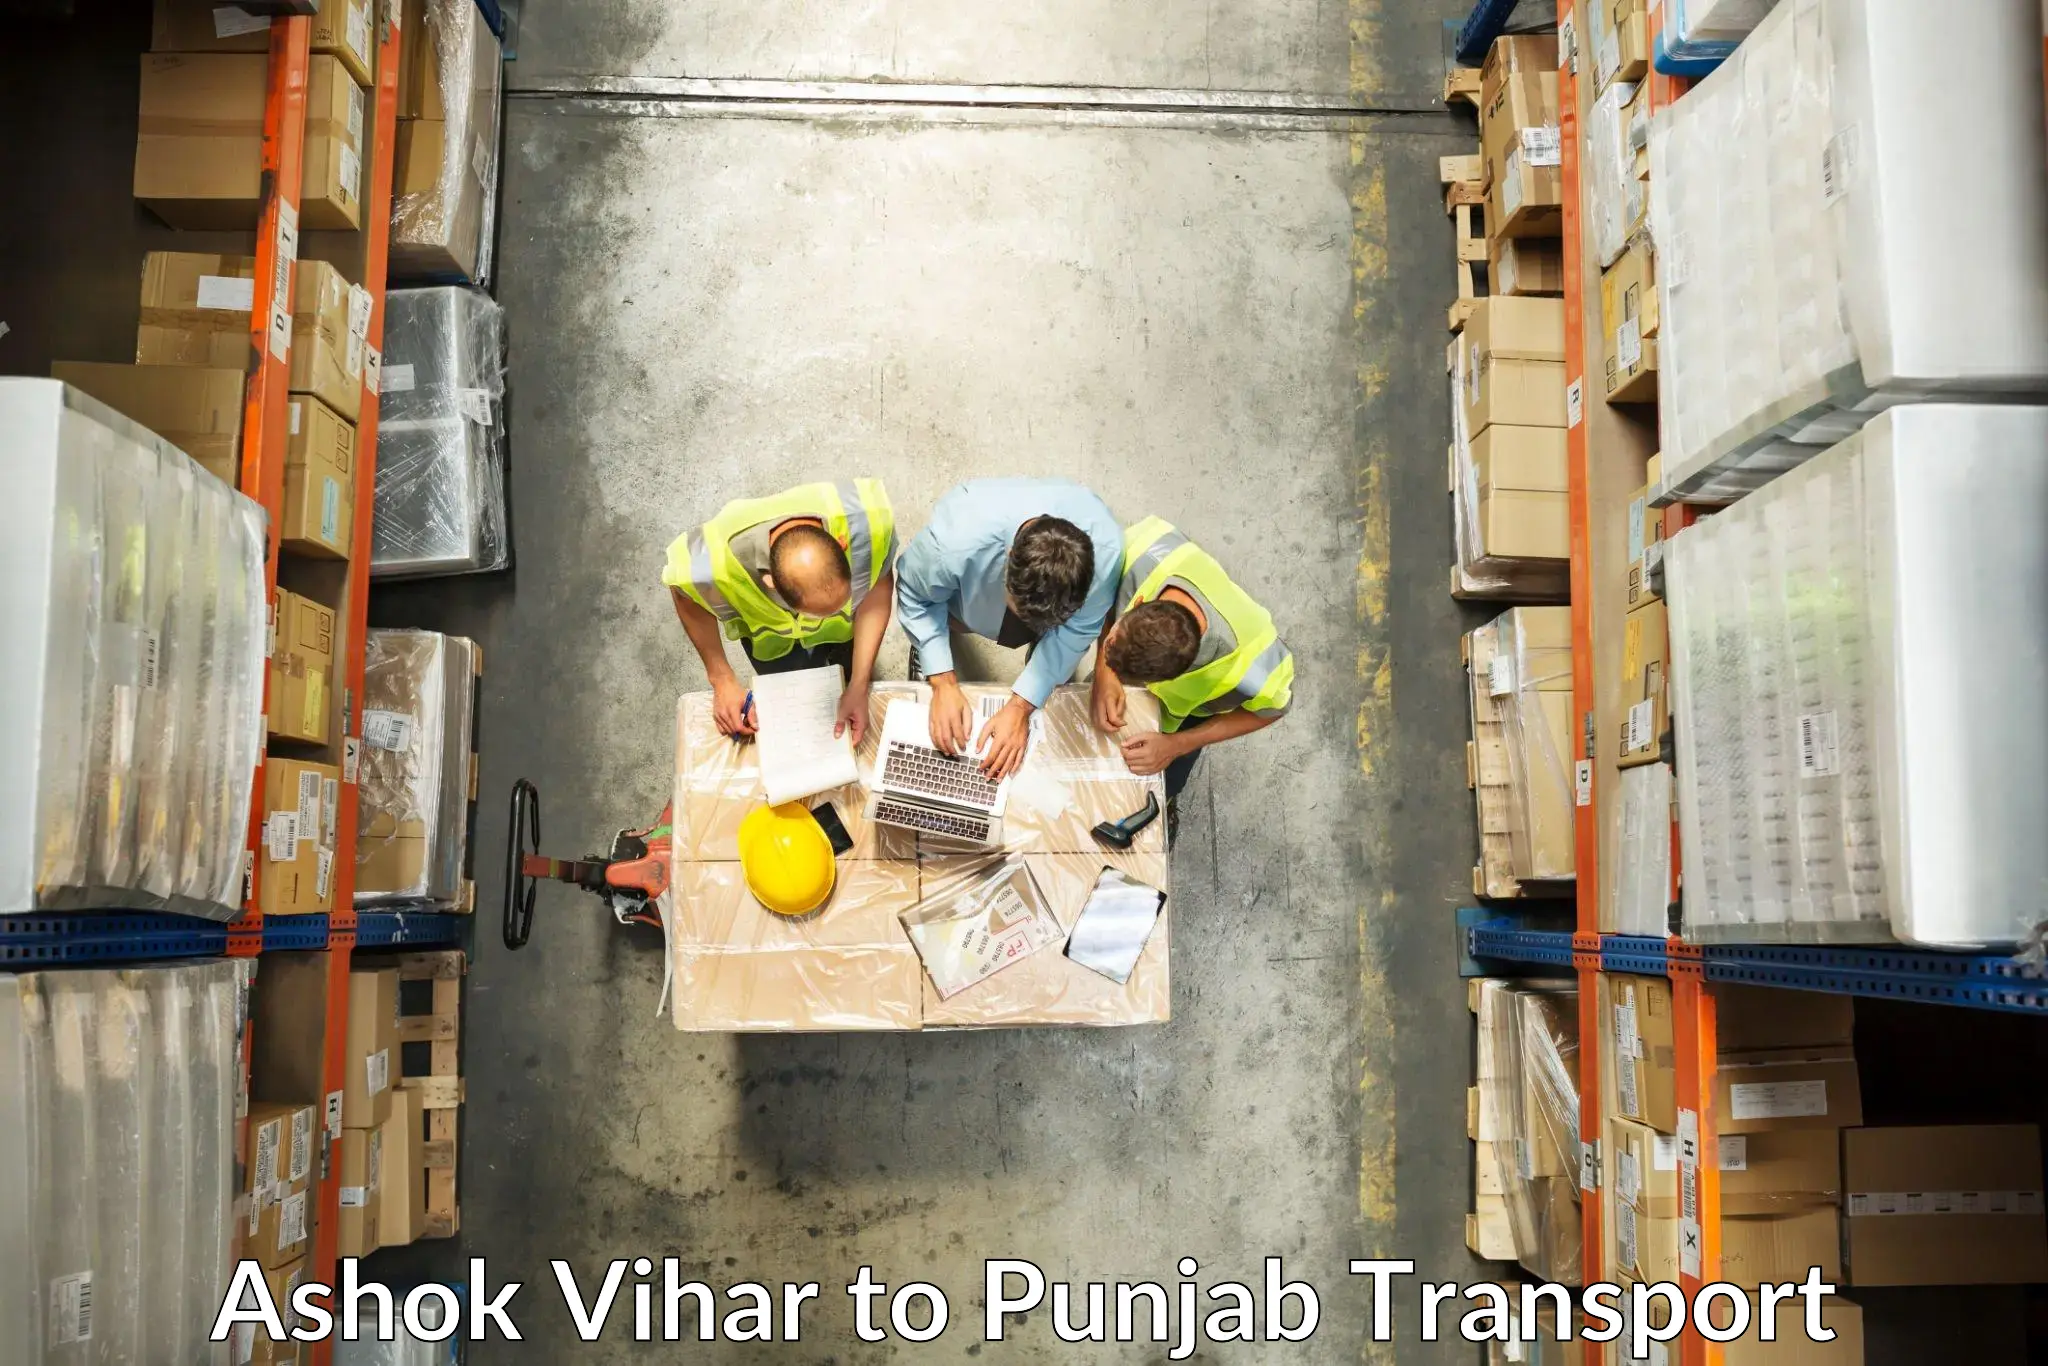 Furniture transport service Ashok Vihar to Batala